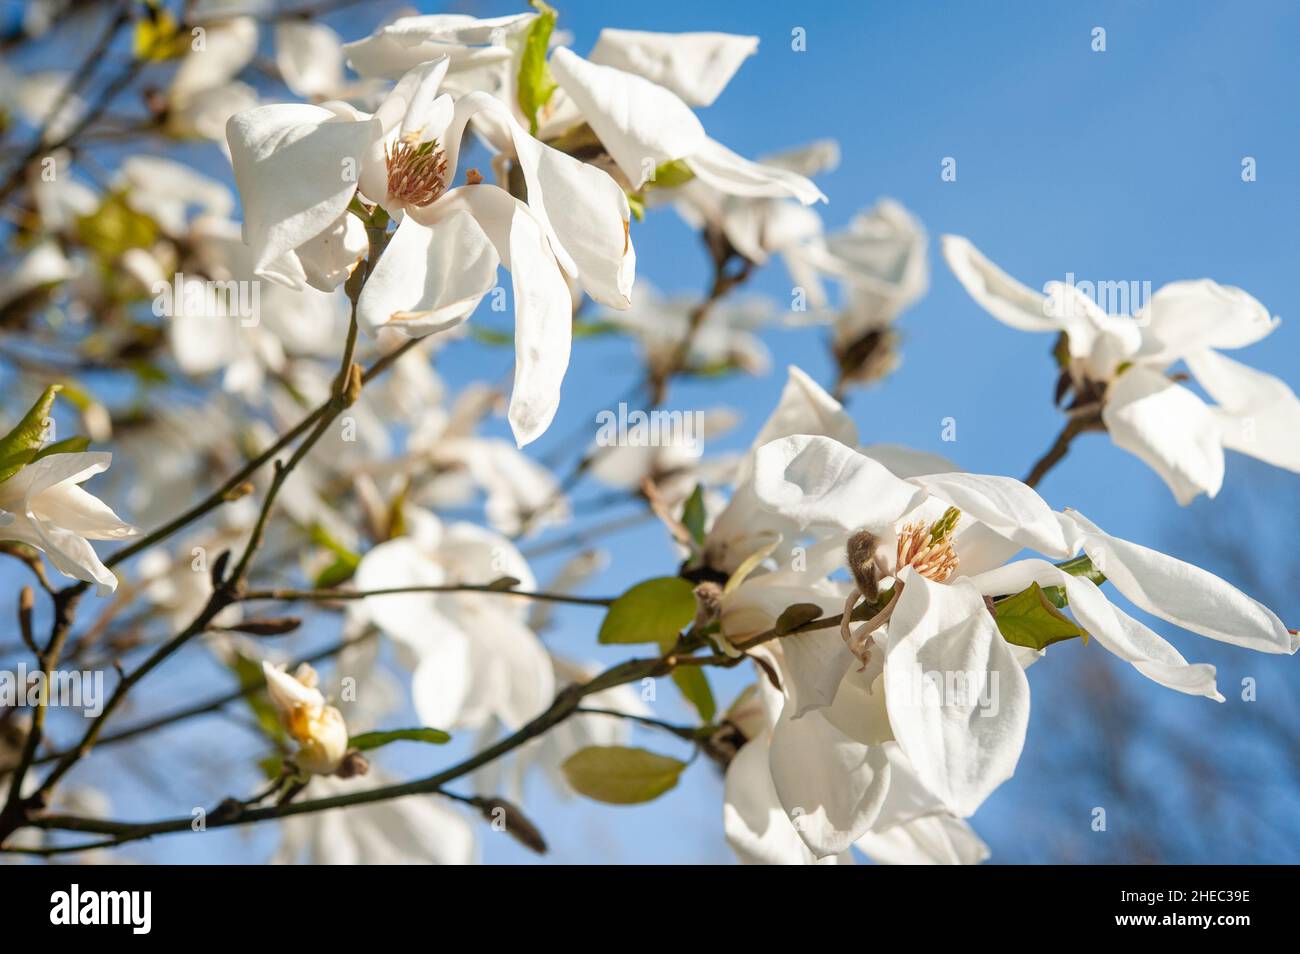 Blooming magnolia kobus, Alppipuisto Park, Helsinki, Finland Stock Photo